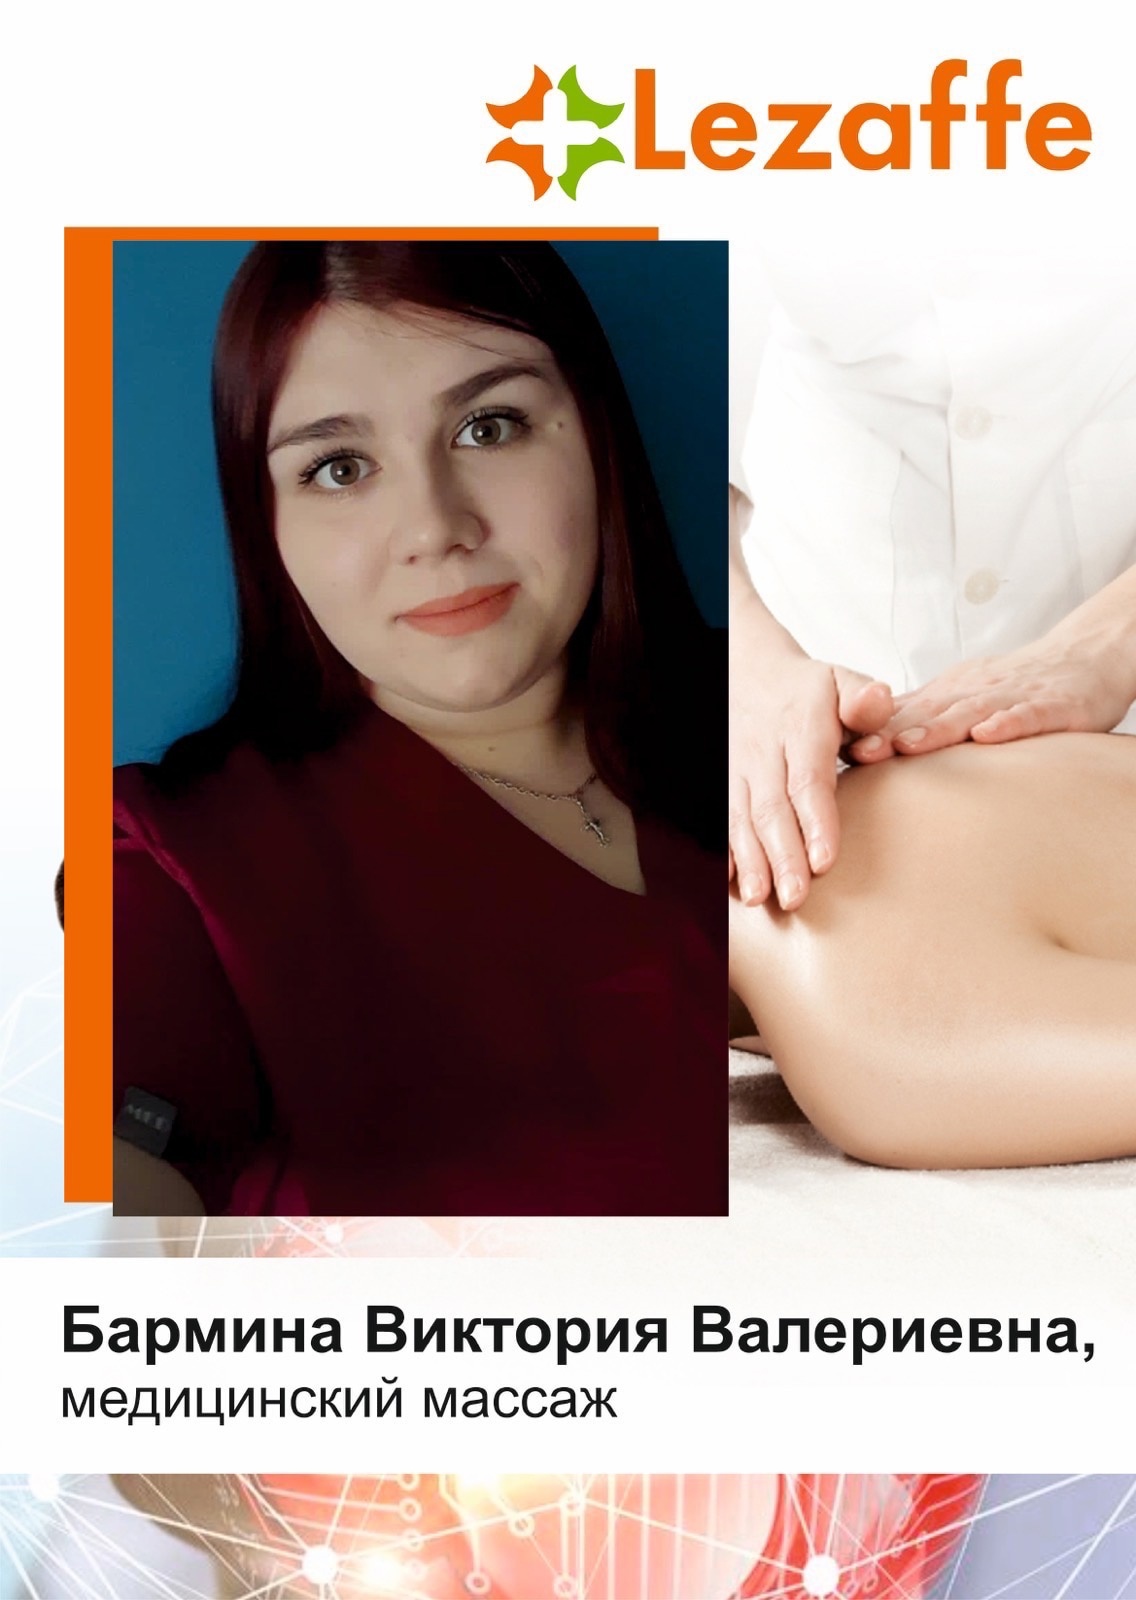 Бармина Виктория Валериевна - медицинский массаж г. Югорск